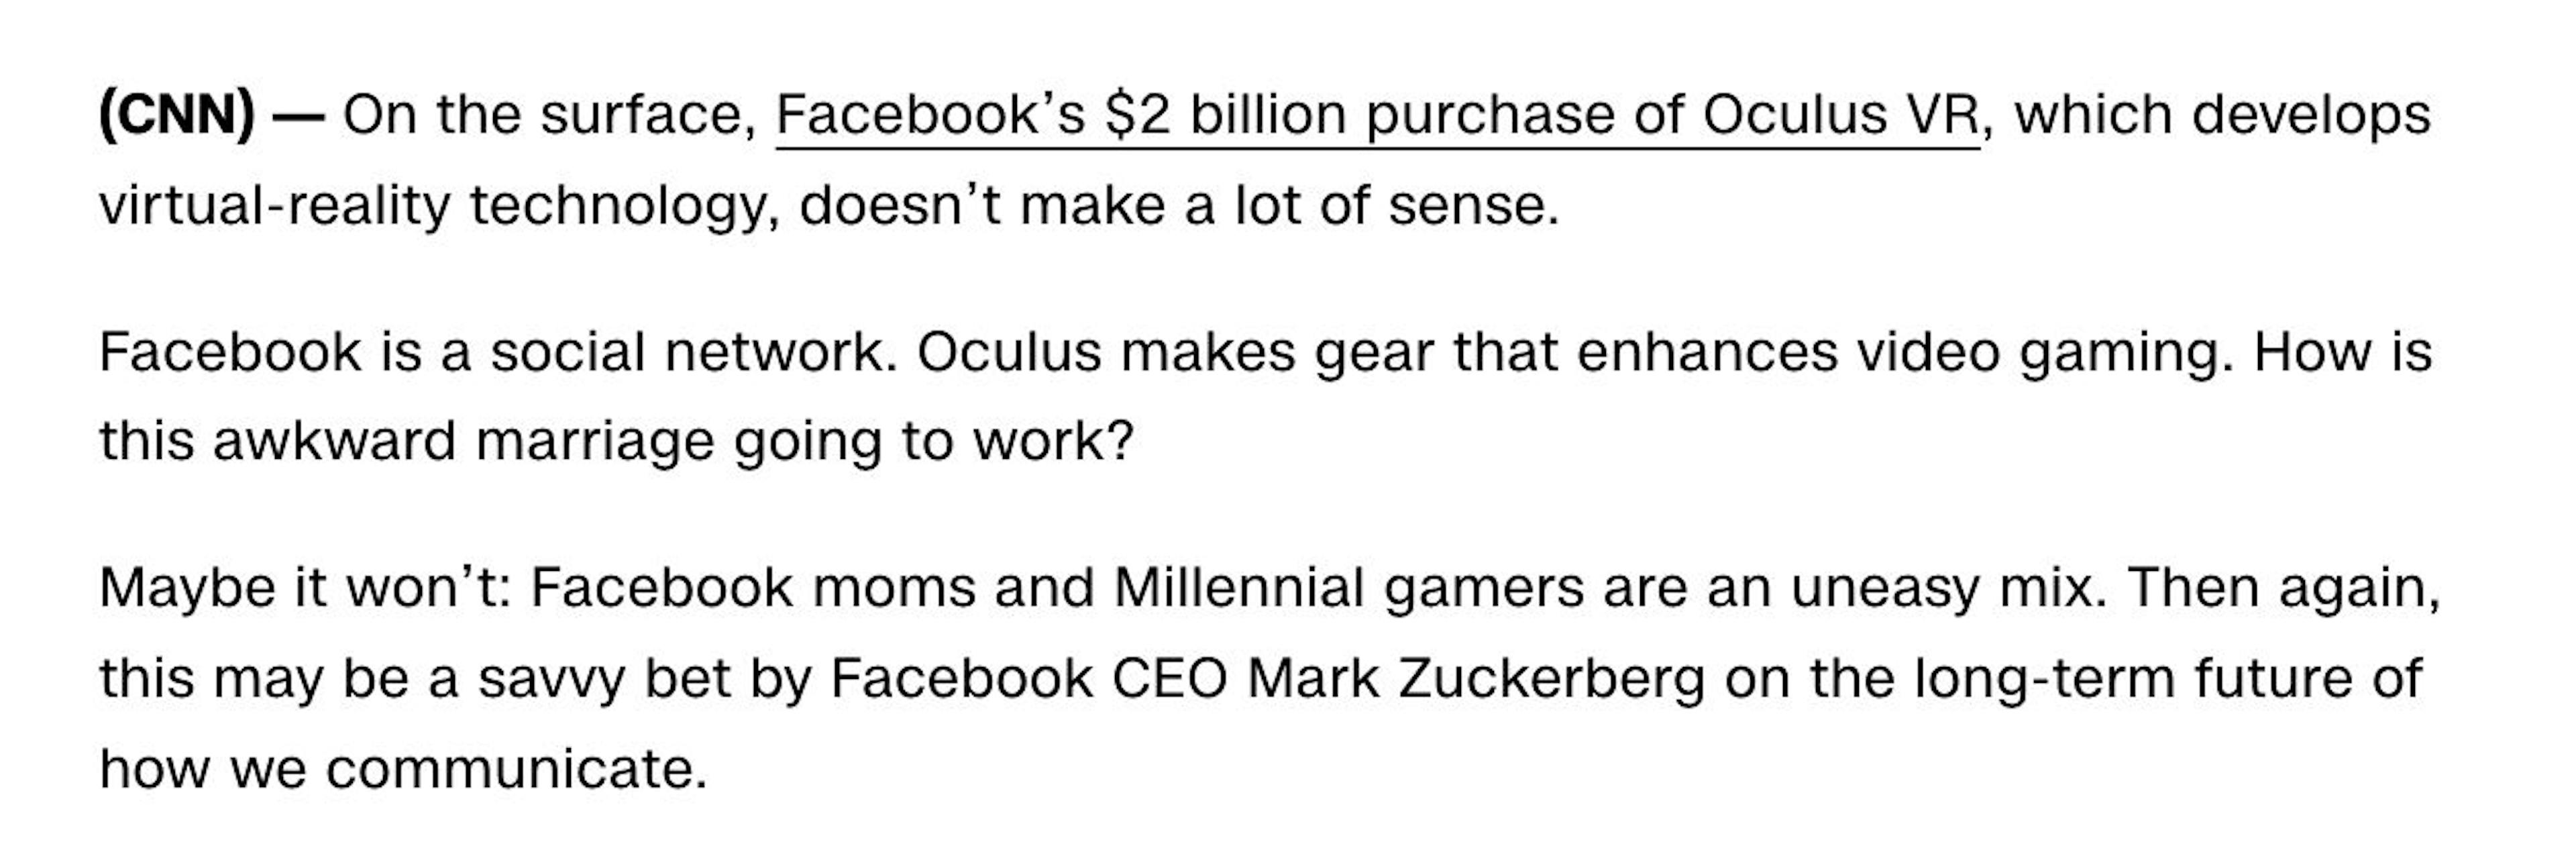 来自“什么是 Oculus VR，为什么 Facebook 为它支付了 20 亿美元？”发布于 2014 年 3 月 26 日